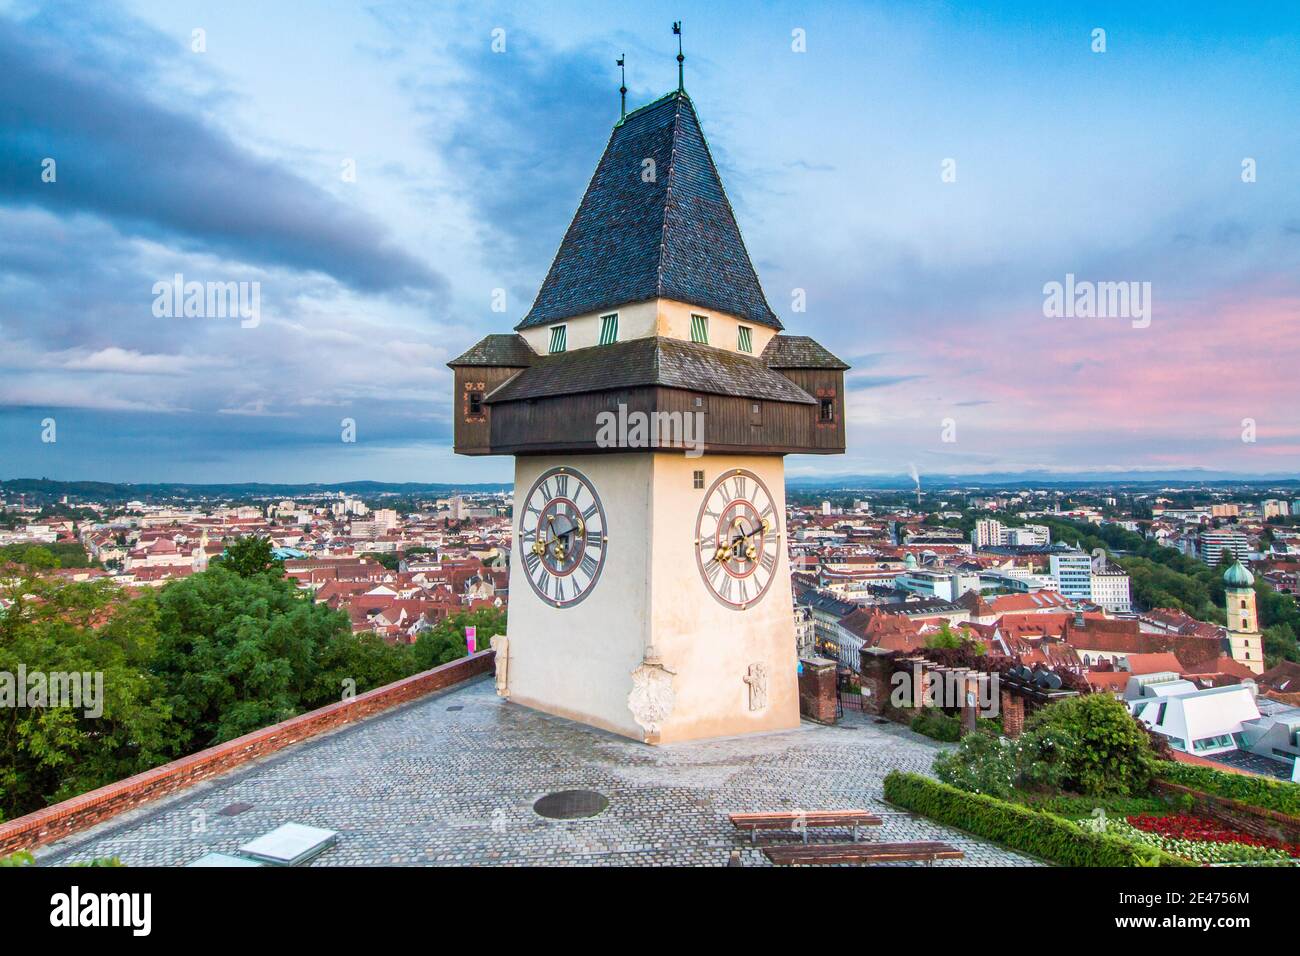 The landmark of Graz called Uhrturm Stock Photo